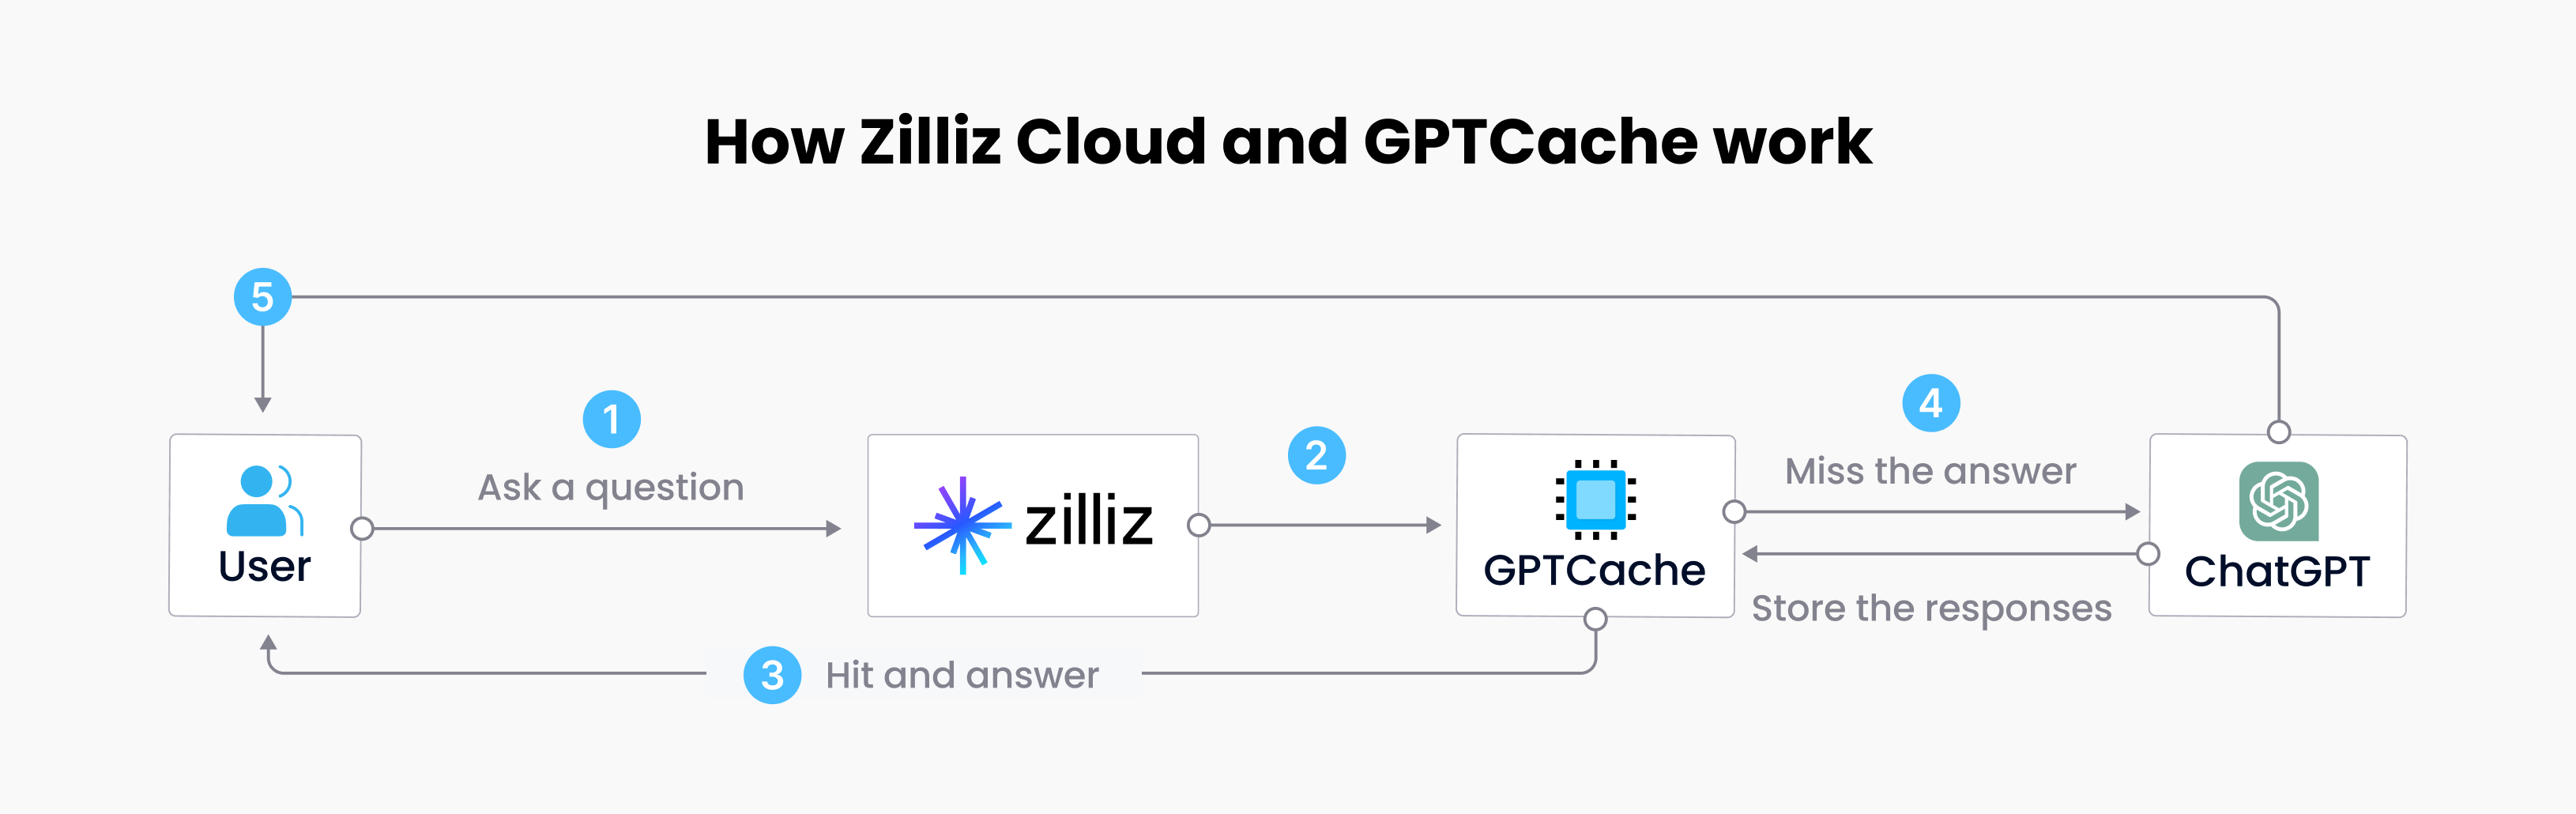 How Zilliz Cloud and GPTCache work